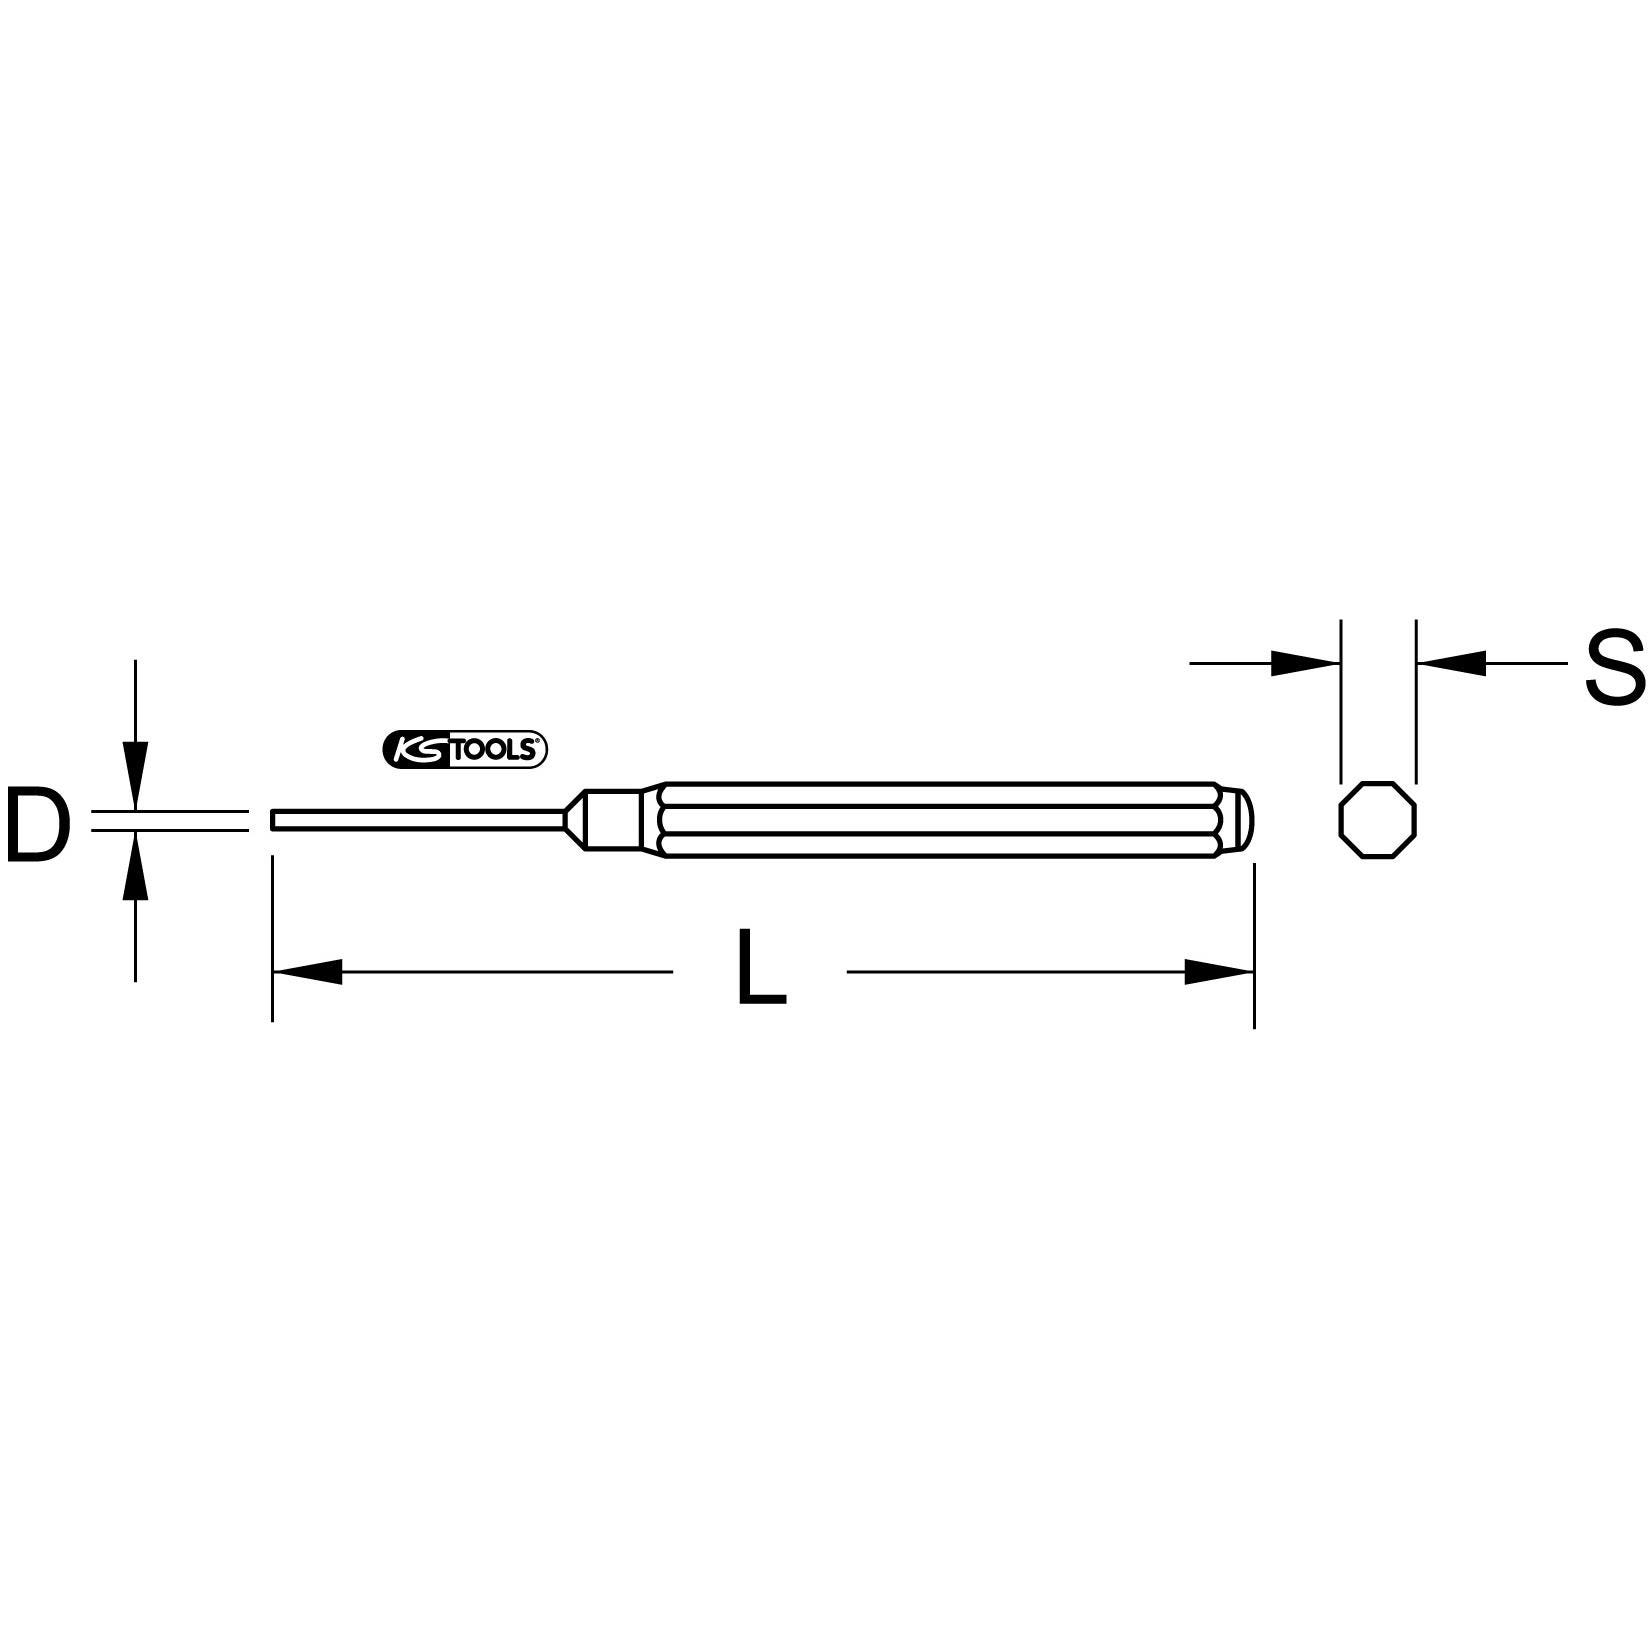 Chasse-goupille avec douille de guidage Ø 1.4mm, L.80mm 1